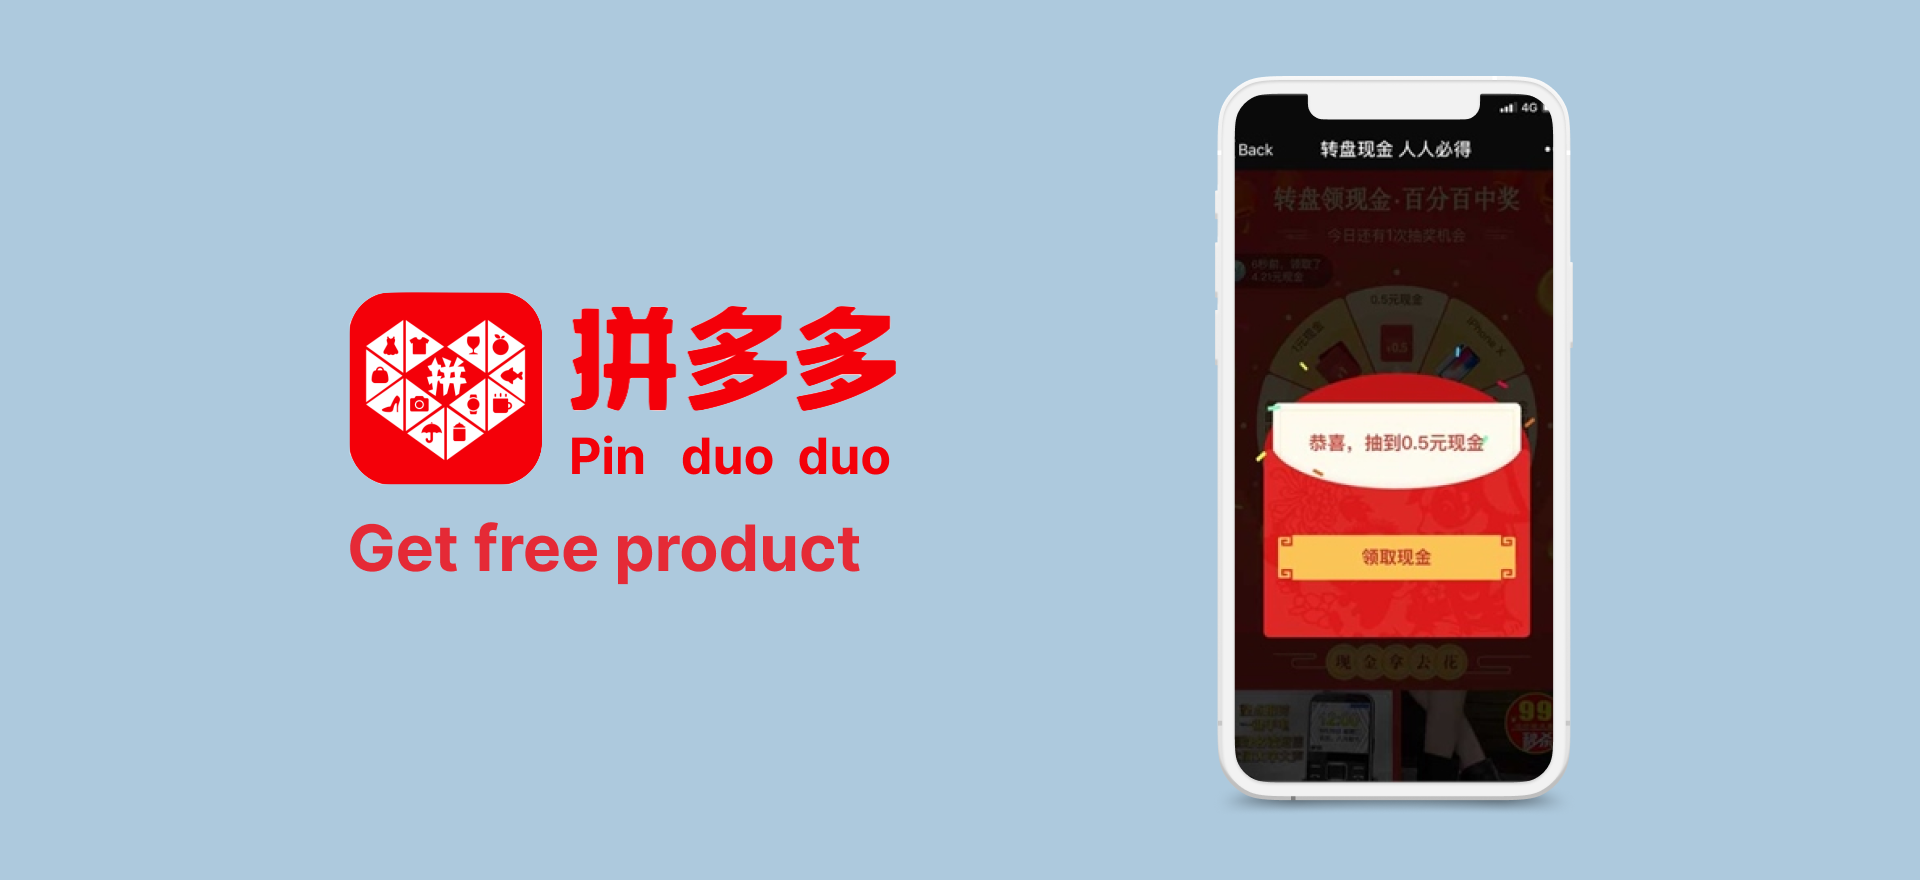 Pinduoduo social commerce app